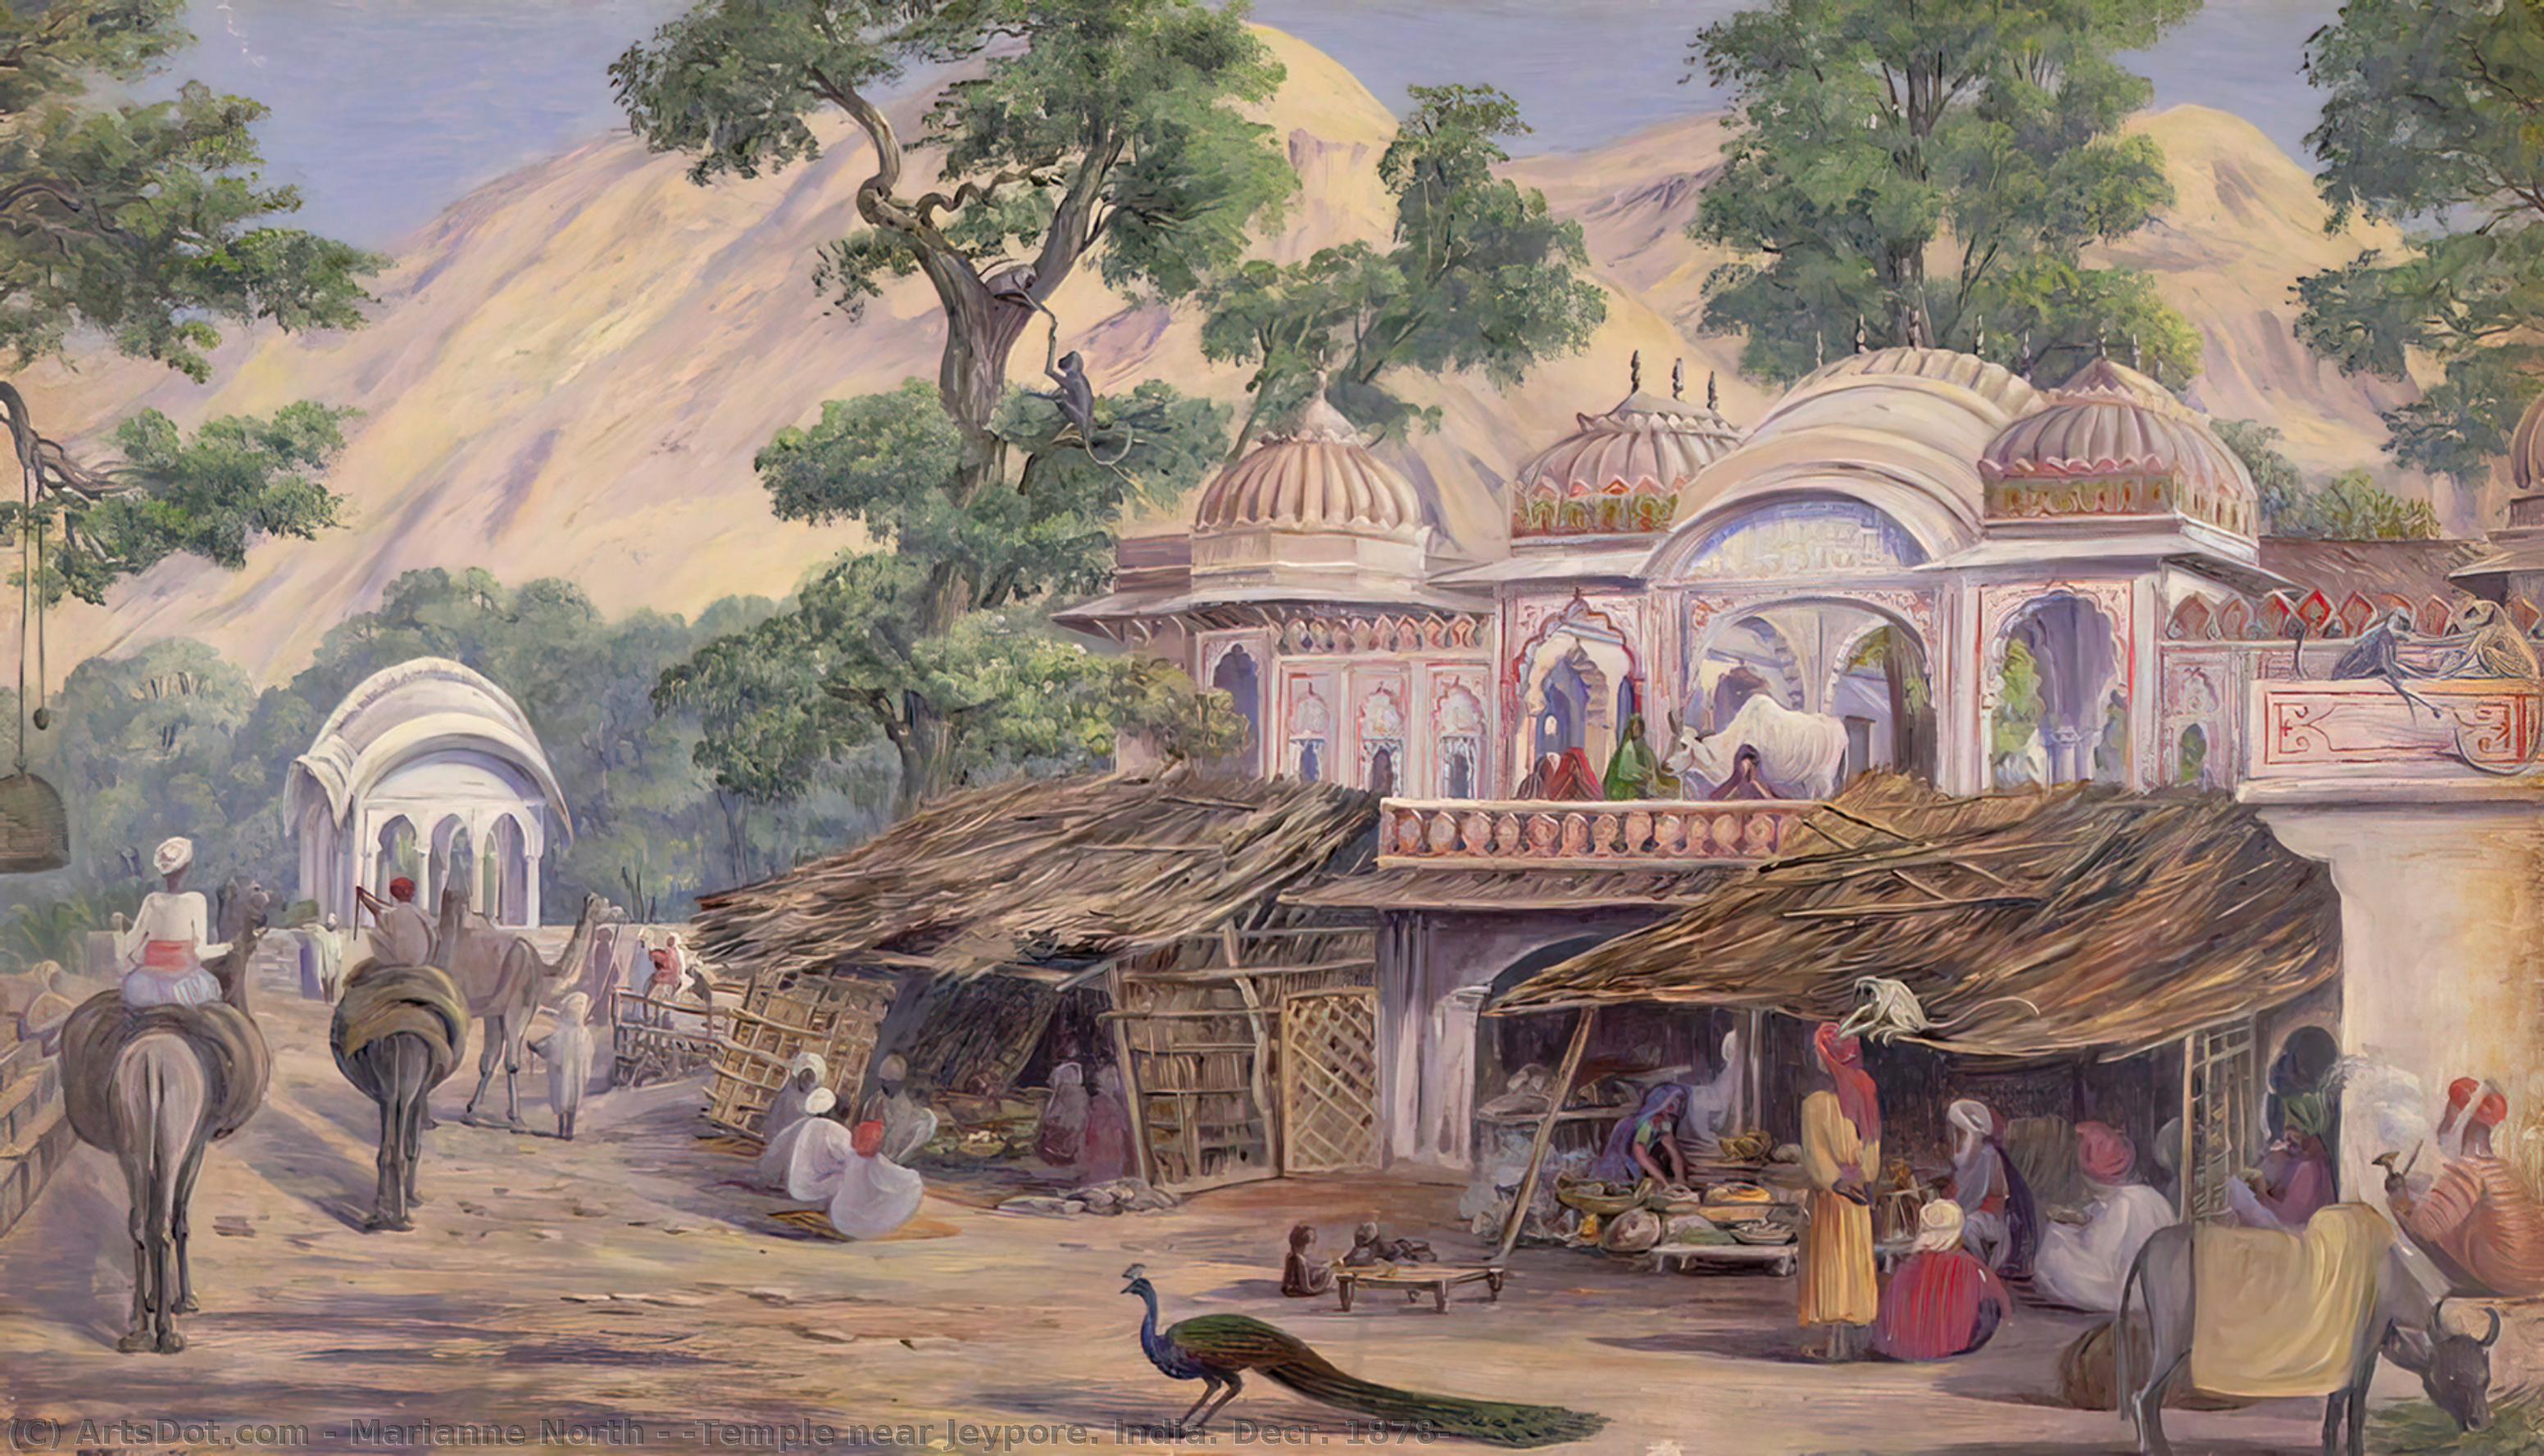 WikiOO.org - Enciclopédia das Belas Artes - Pintura, Arte por Marianne North - 'Temple near Jeypore. India. Decr. 1878'